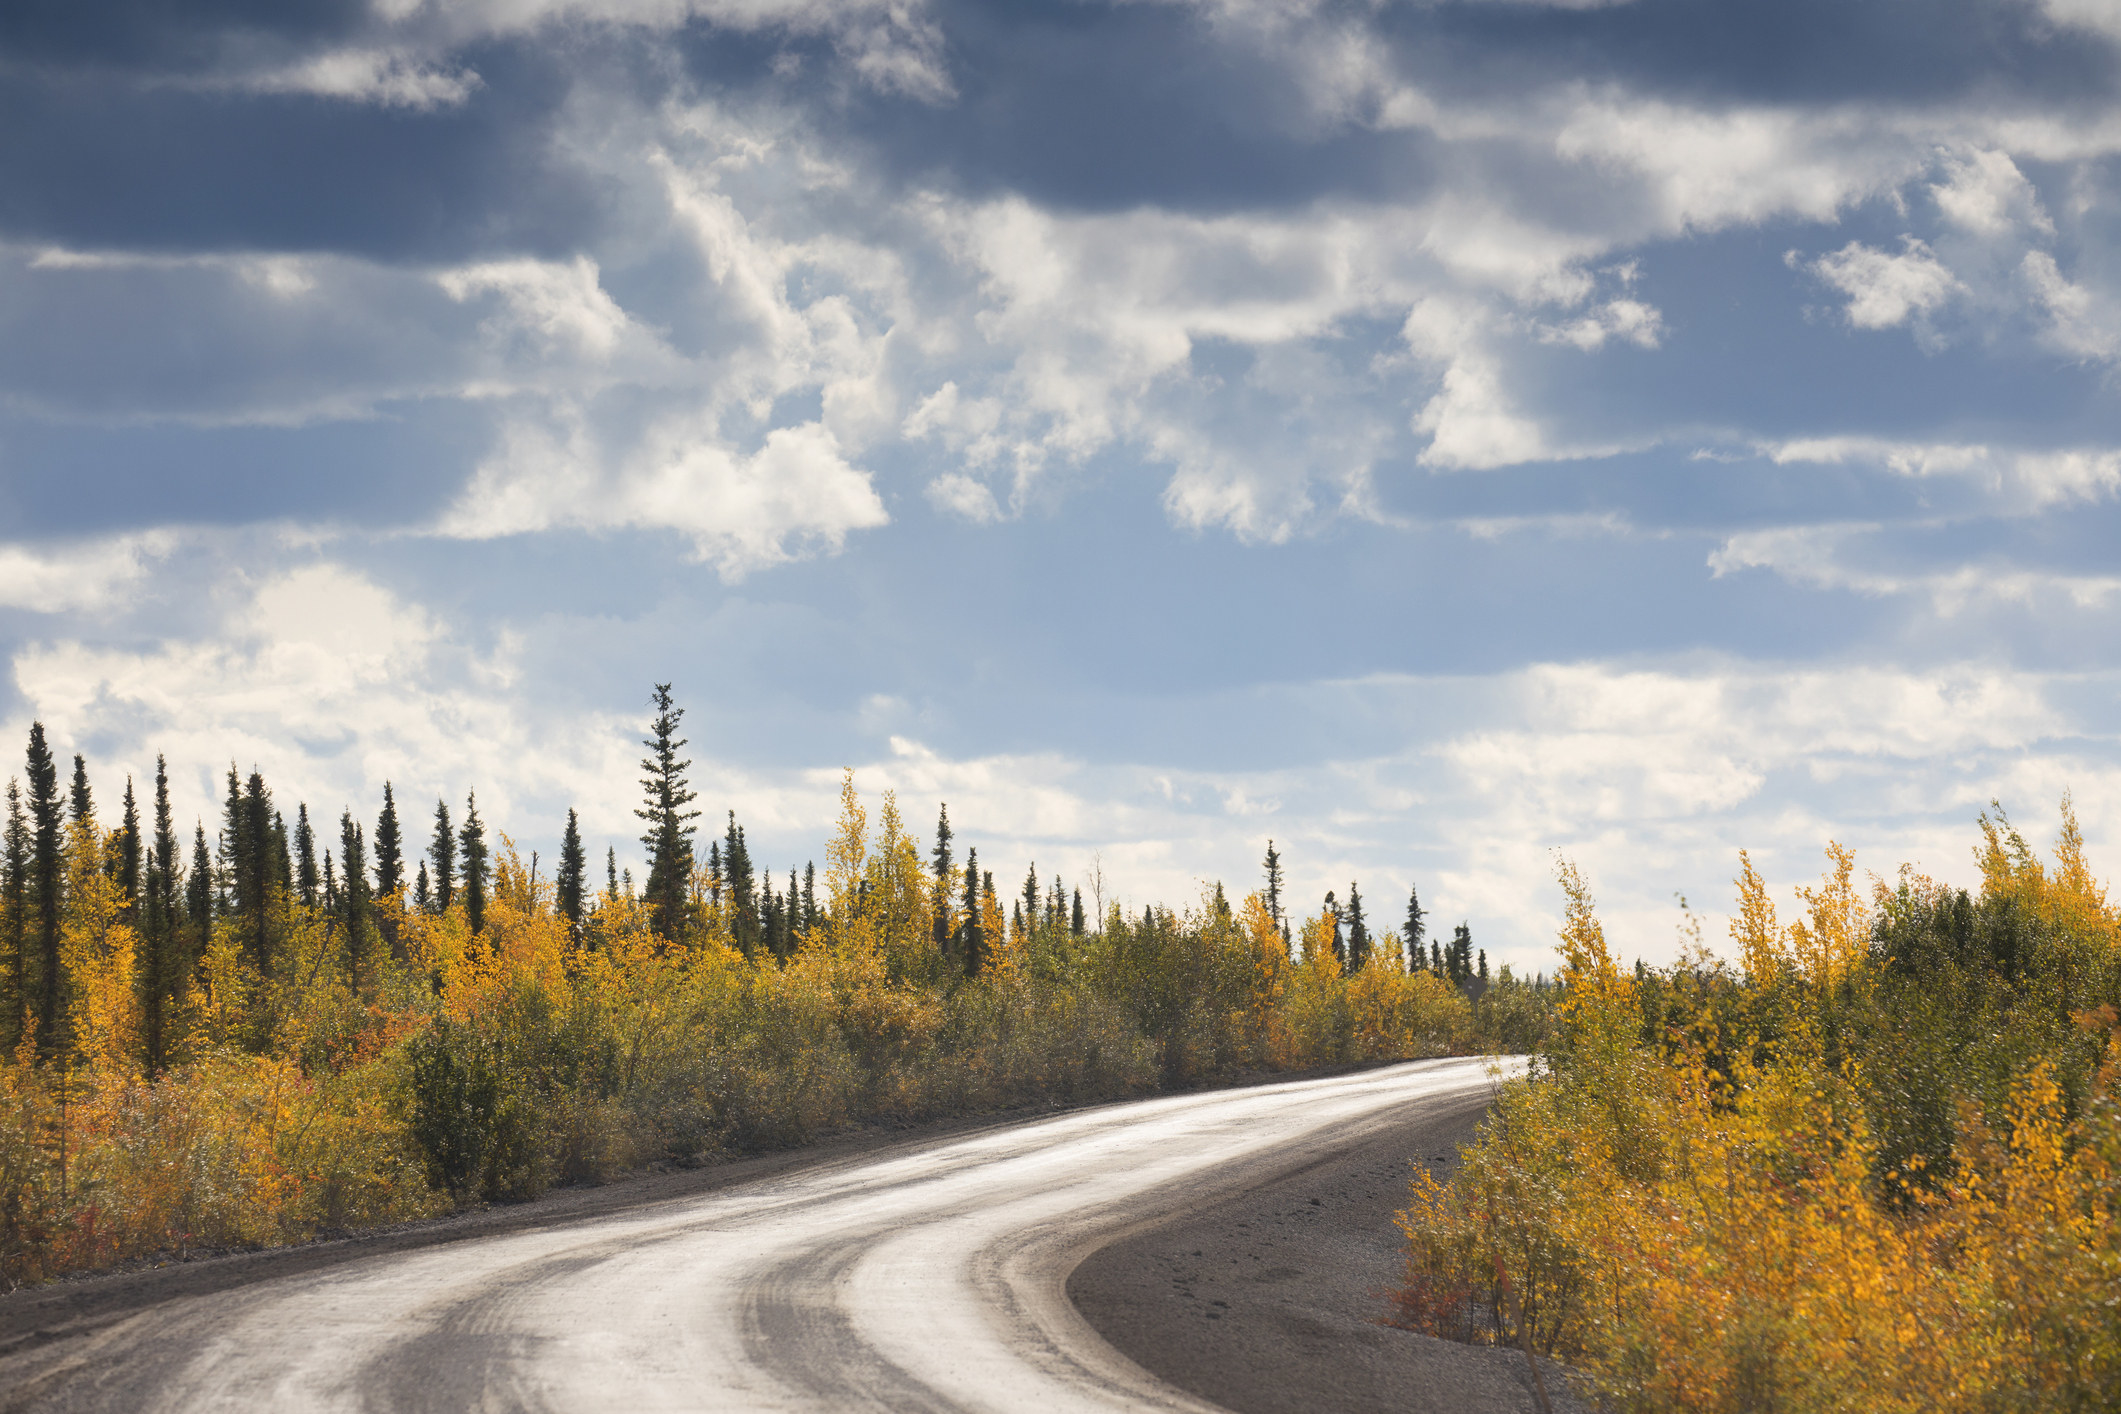 Canada Yukon Dempster road l near Northwest territory border with Yukon